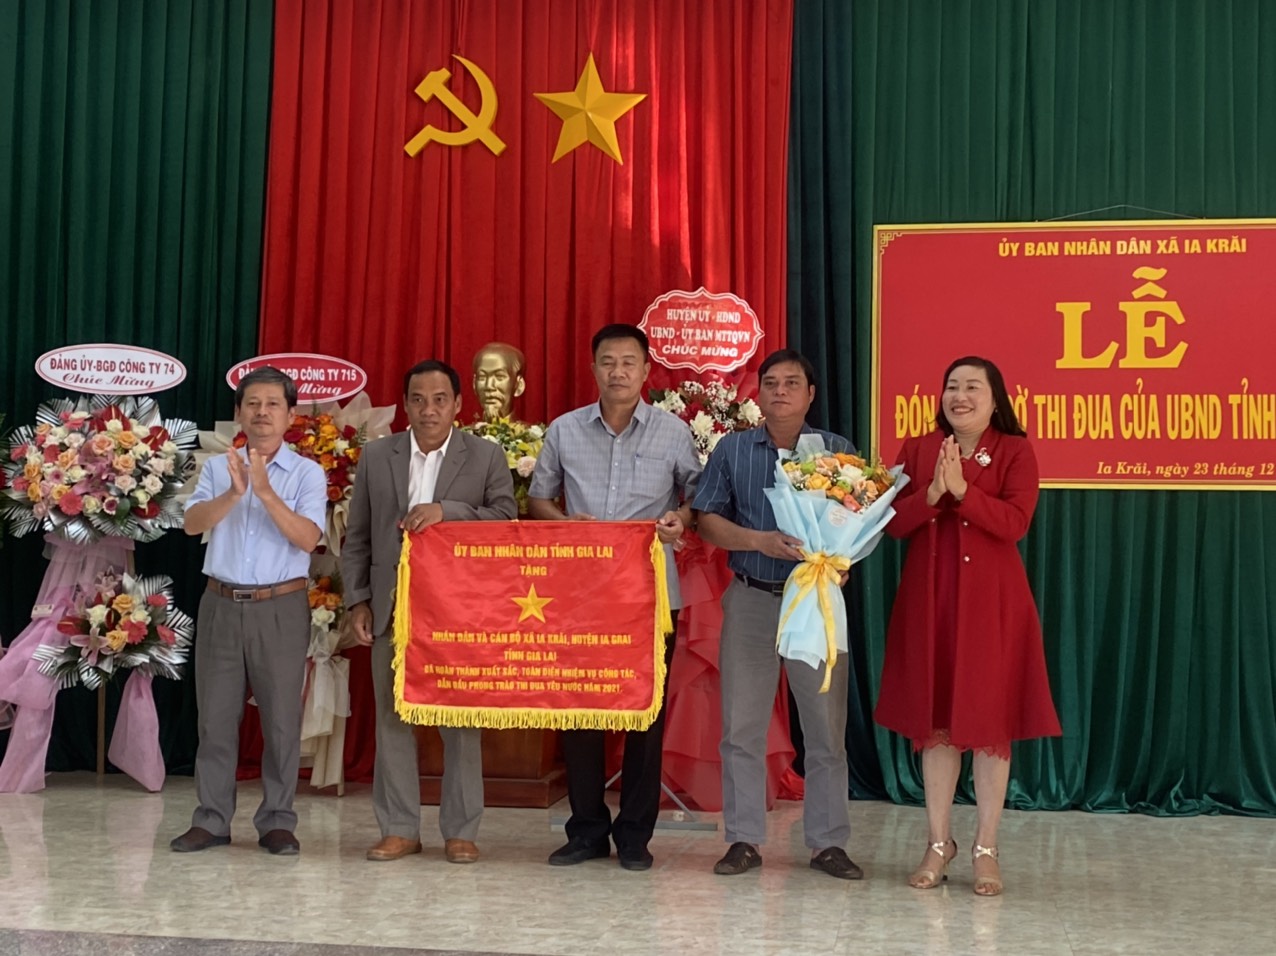 Lễ đón nhận cờ thi đua của UBND tỉnh Gia Lai